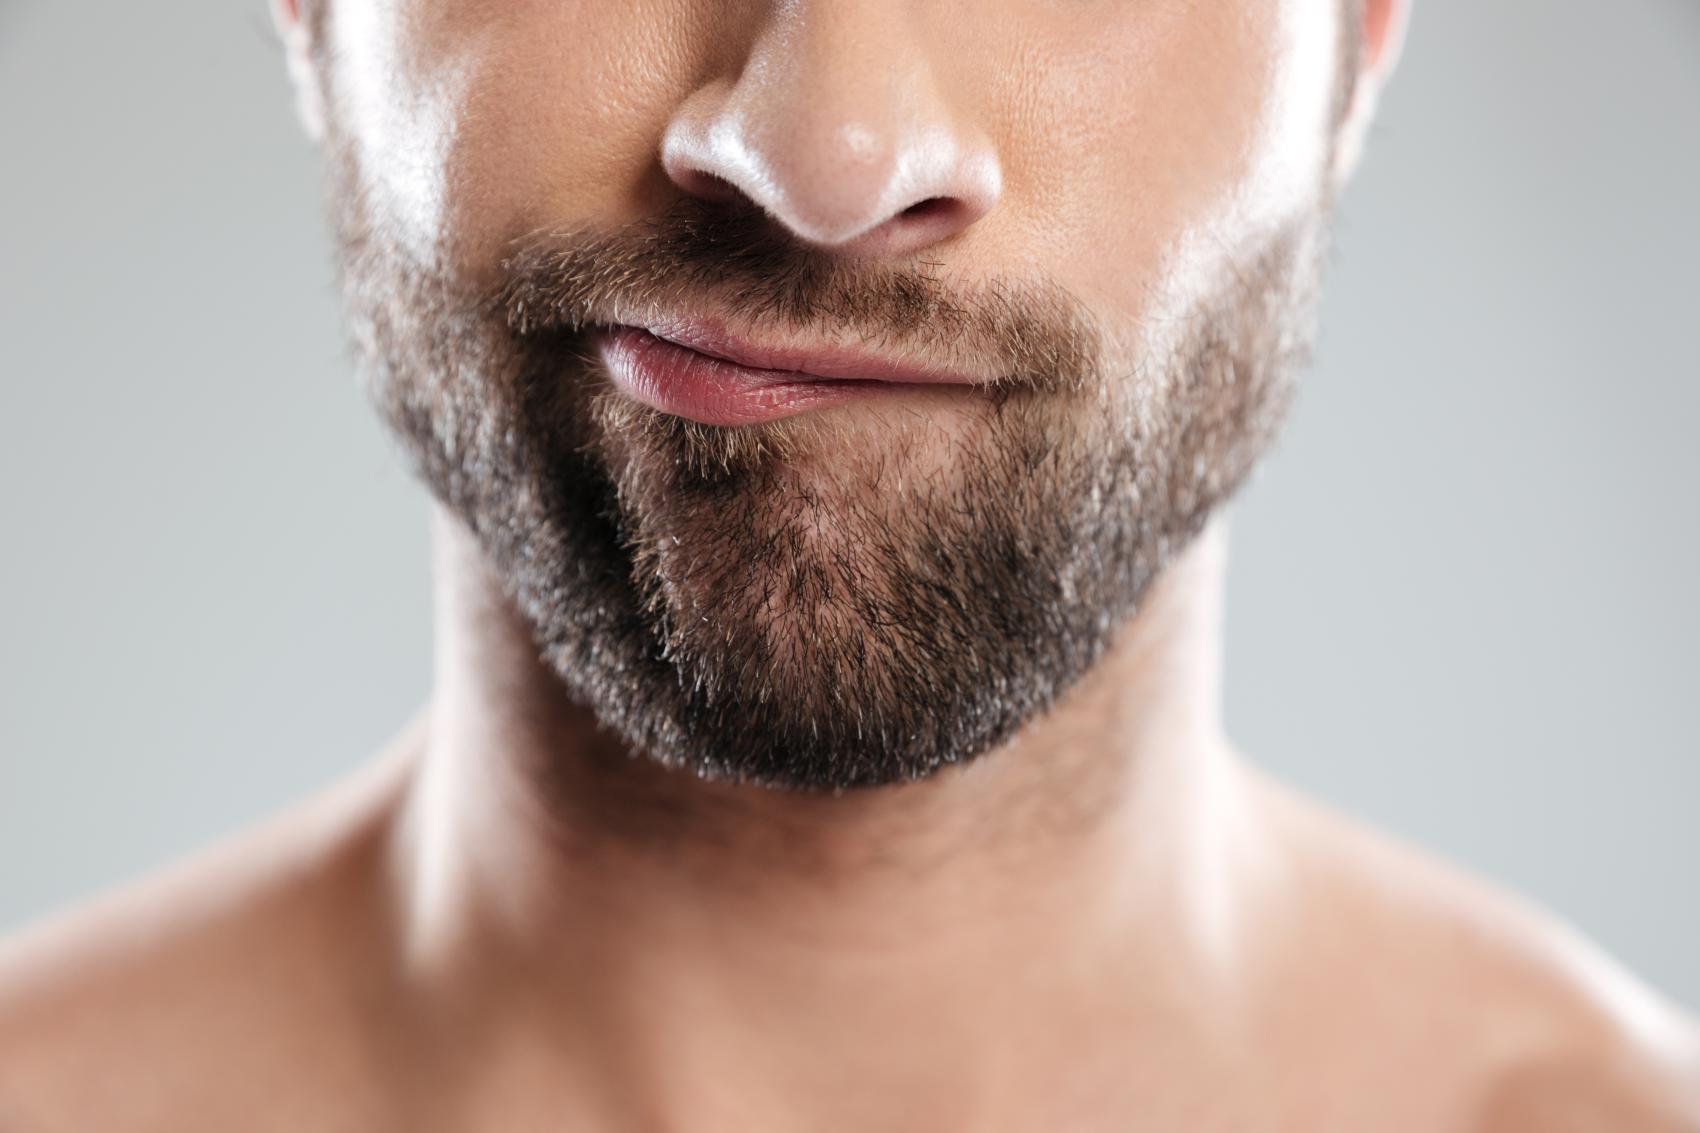 ¿Inflamacion de la piel de tu barba con perdida de vello asociada?